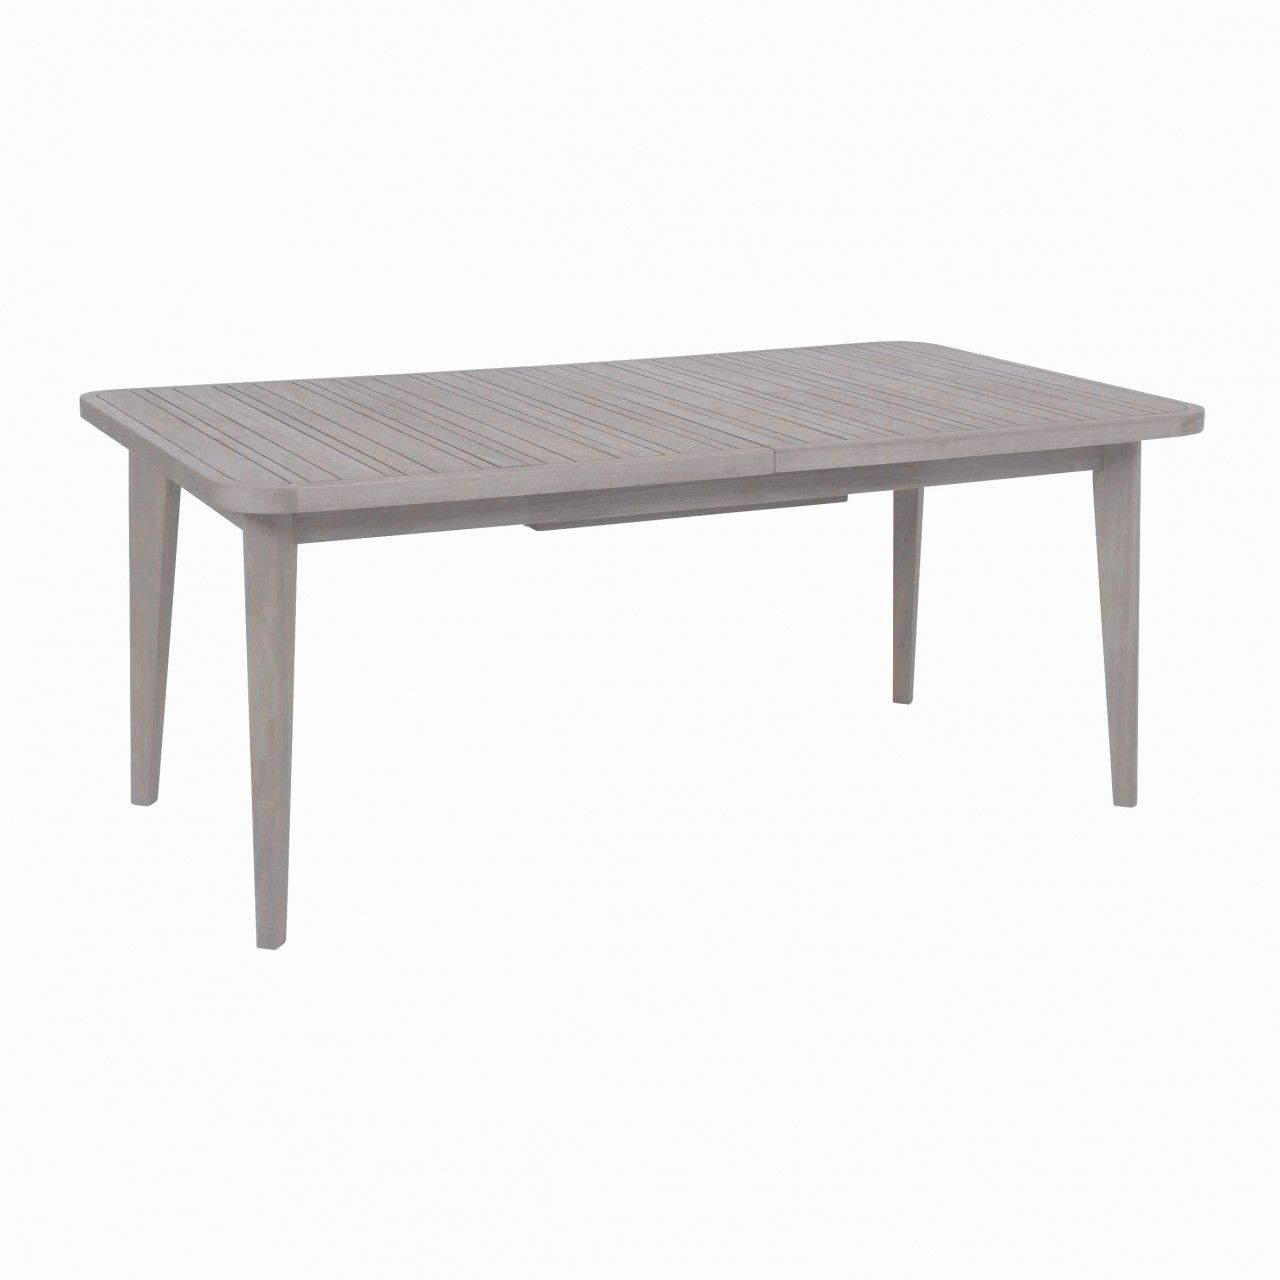 Gartentisch Teak Schön 20 Luxury Ikea solid Wood Coffee Table 2020